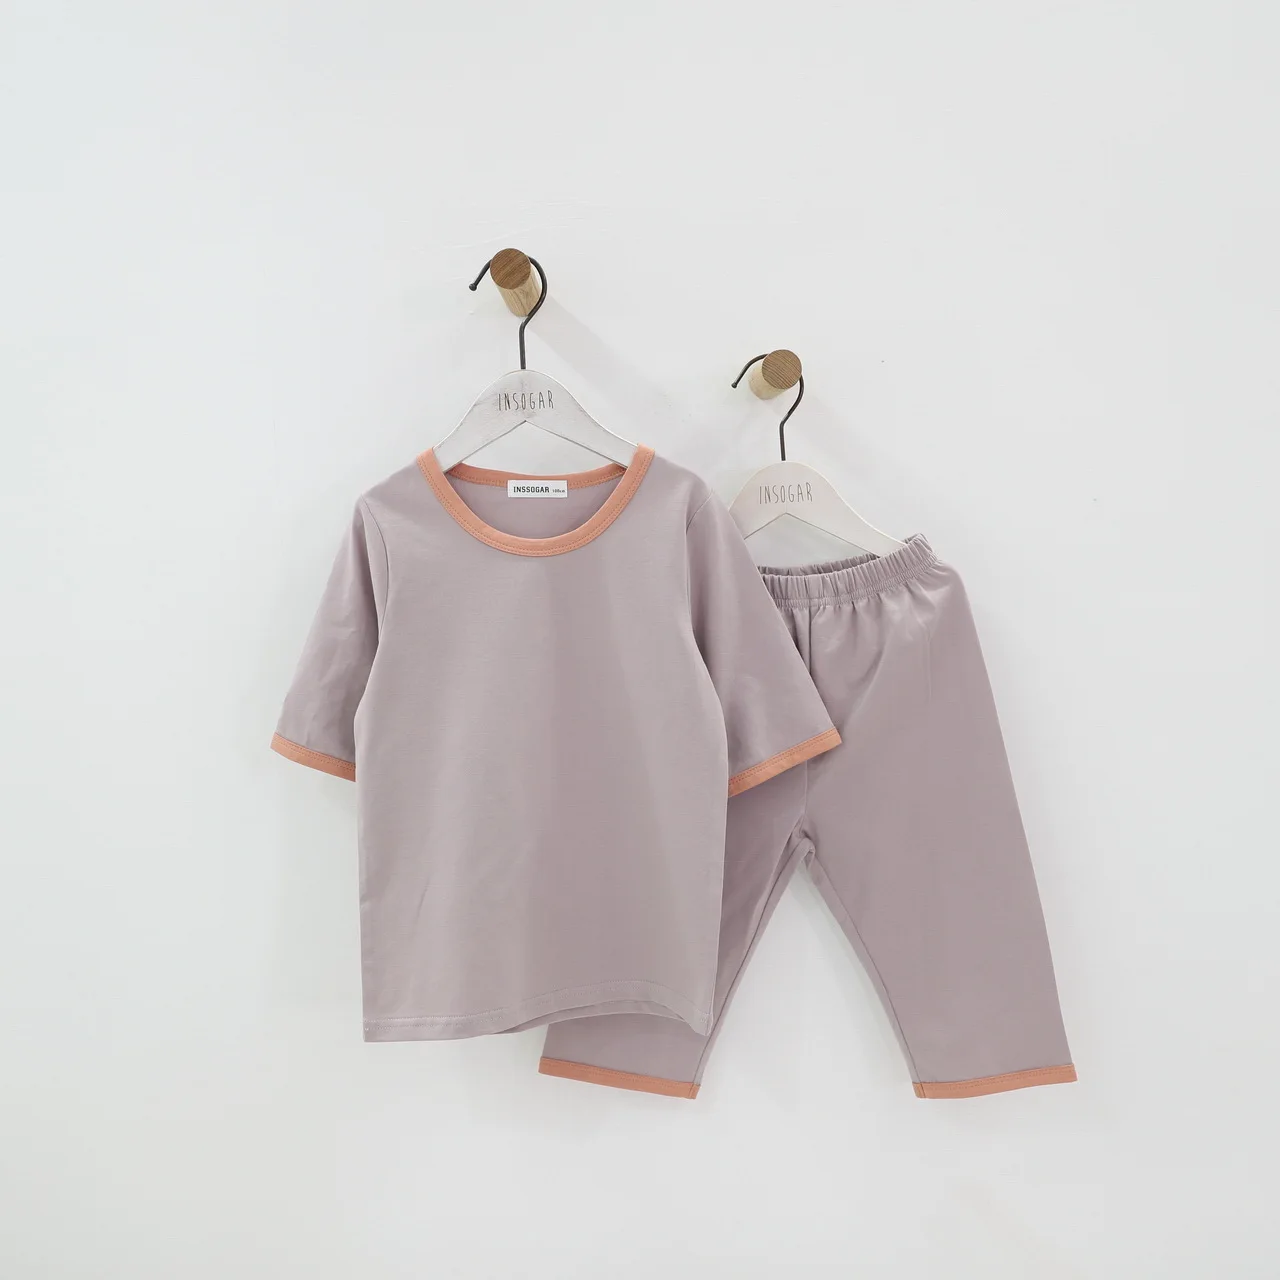 Дети мальчики девочки хлопковые пижамы комплект детская одежда 12 M 18 M 24 M 2 3 4 5 6 7 8 От 9 до 15 лет летние тонкие одежда для малышей - Цвет: Розовый